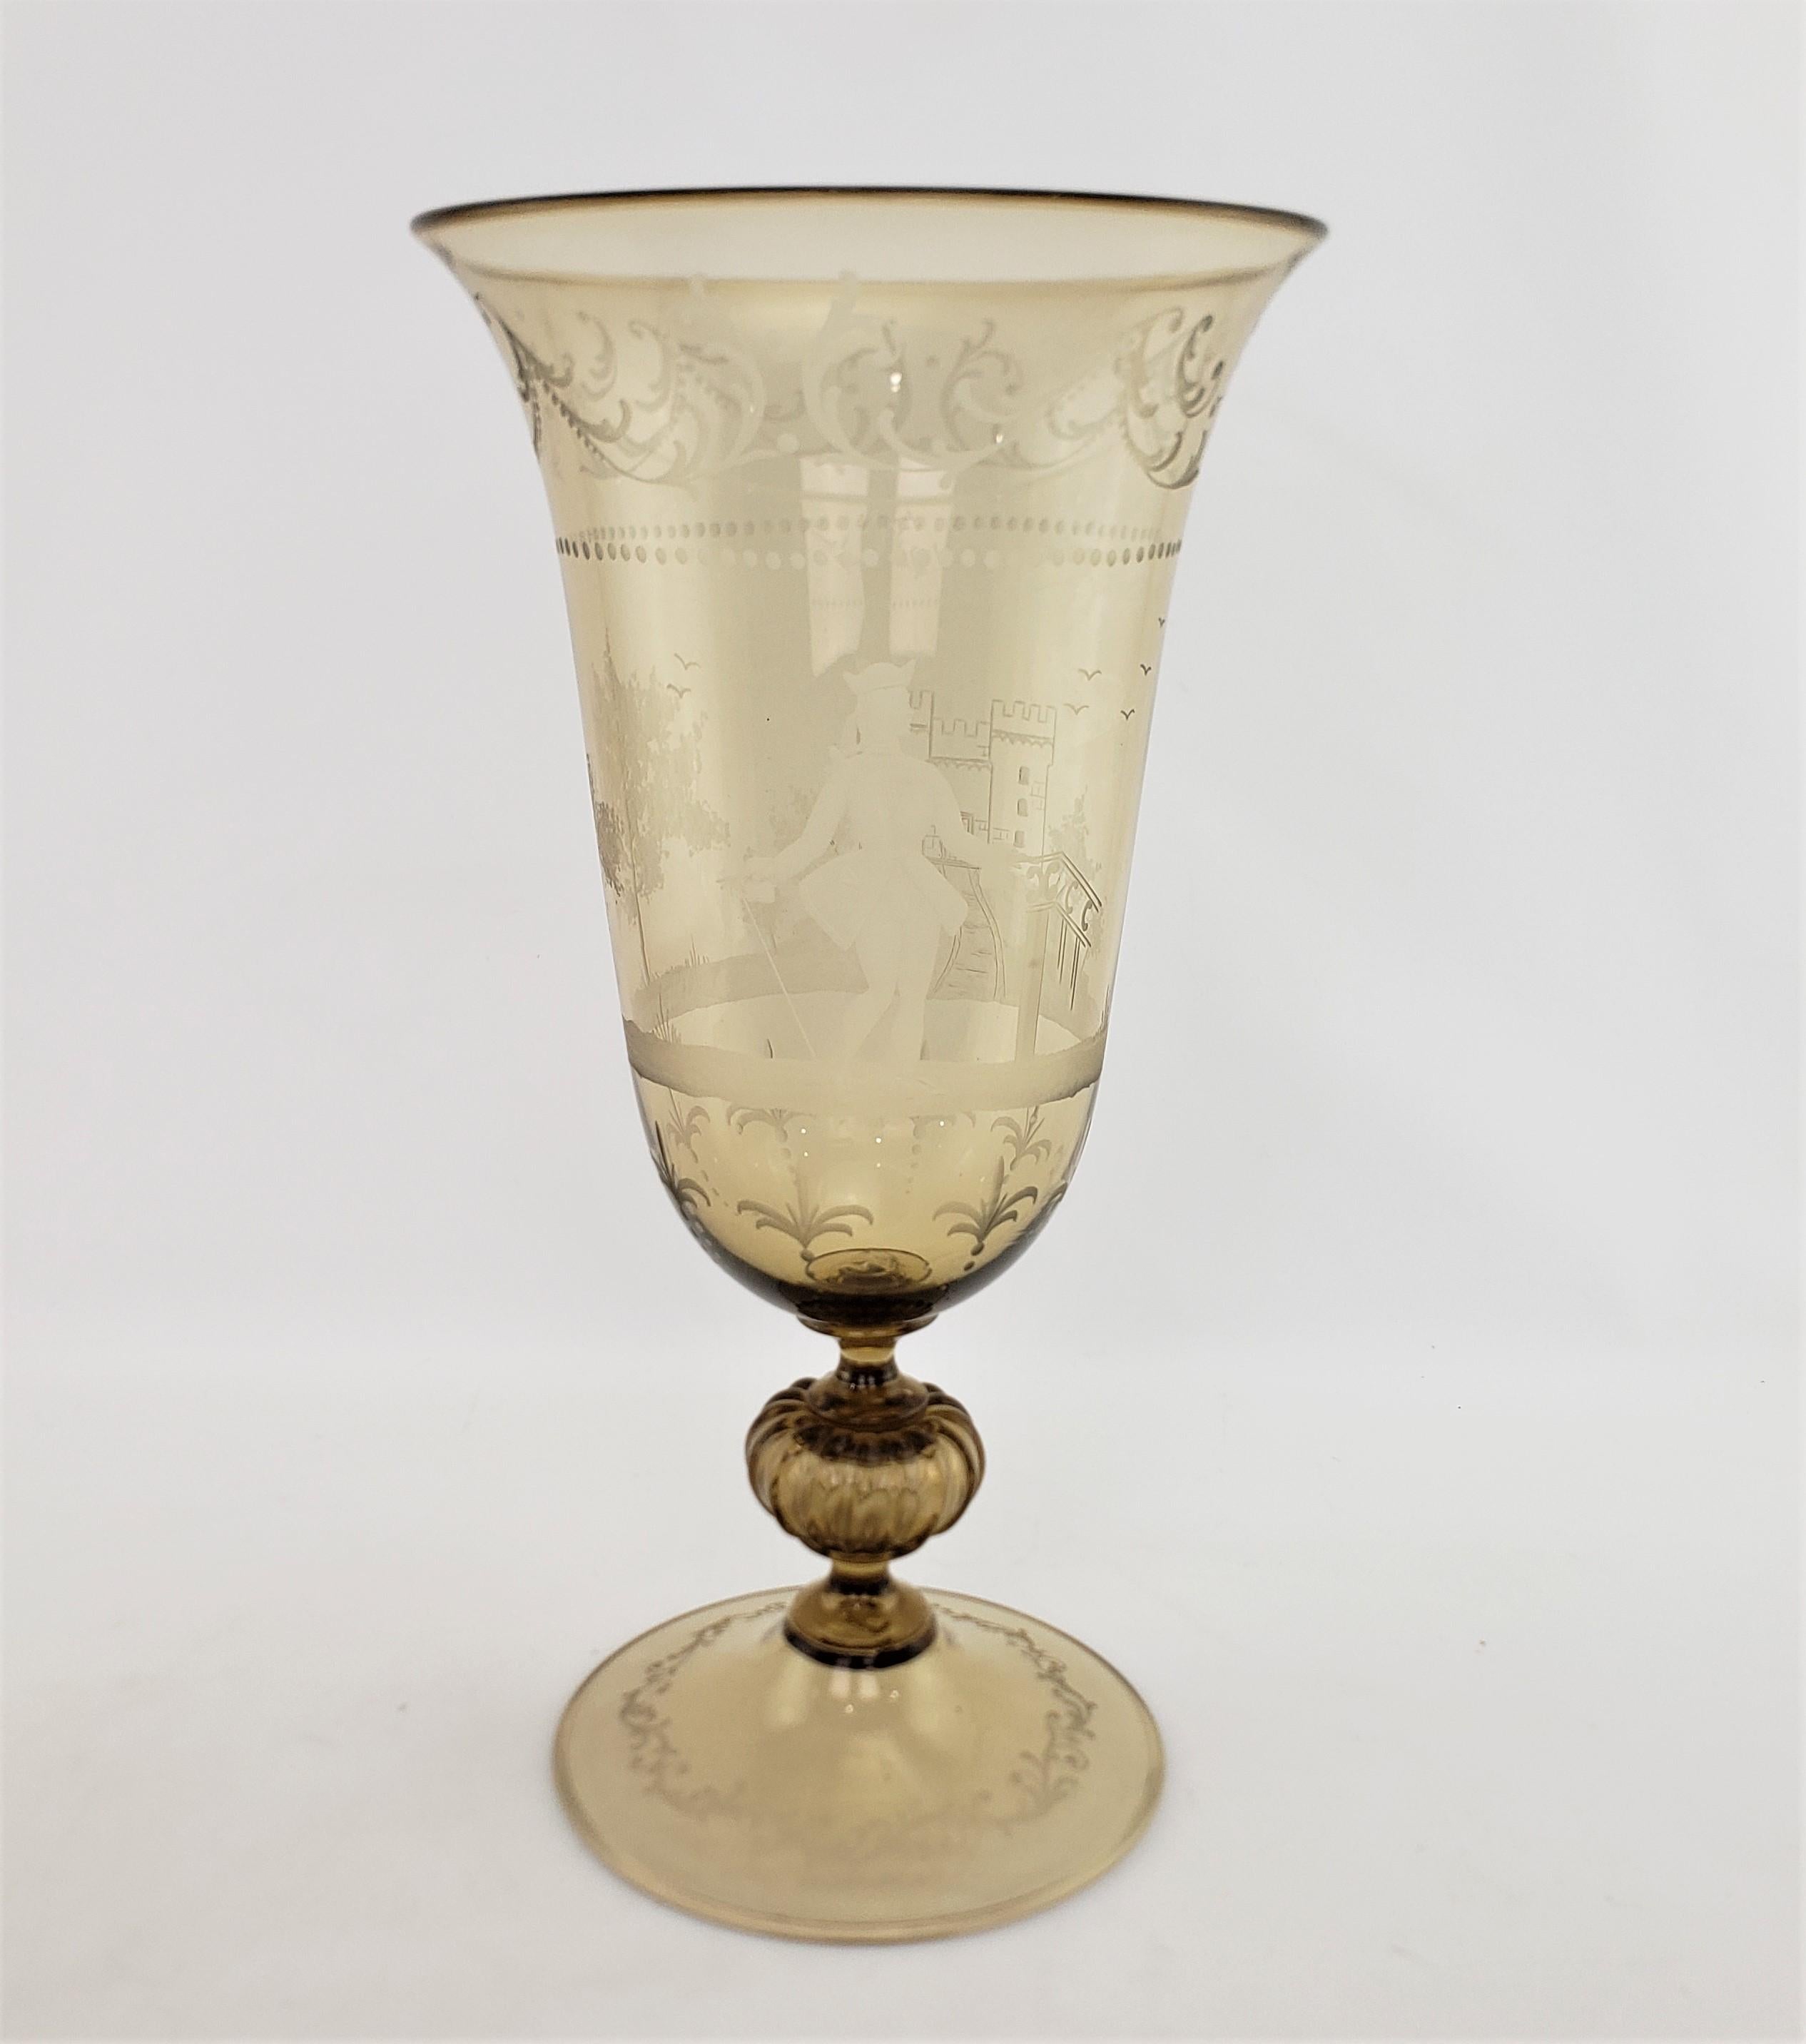 Ce très grand et substantiel vase en verre d'art ambré clair n'est pas signé, mais on suppose qu'il provient d'Italie et qu'il date d'environ 1950. Il est réalisé dans un style néo-Renaissance. Ce vase est fabriqué à la main et réalisé dans un verre